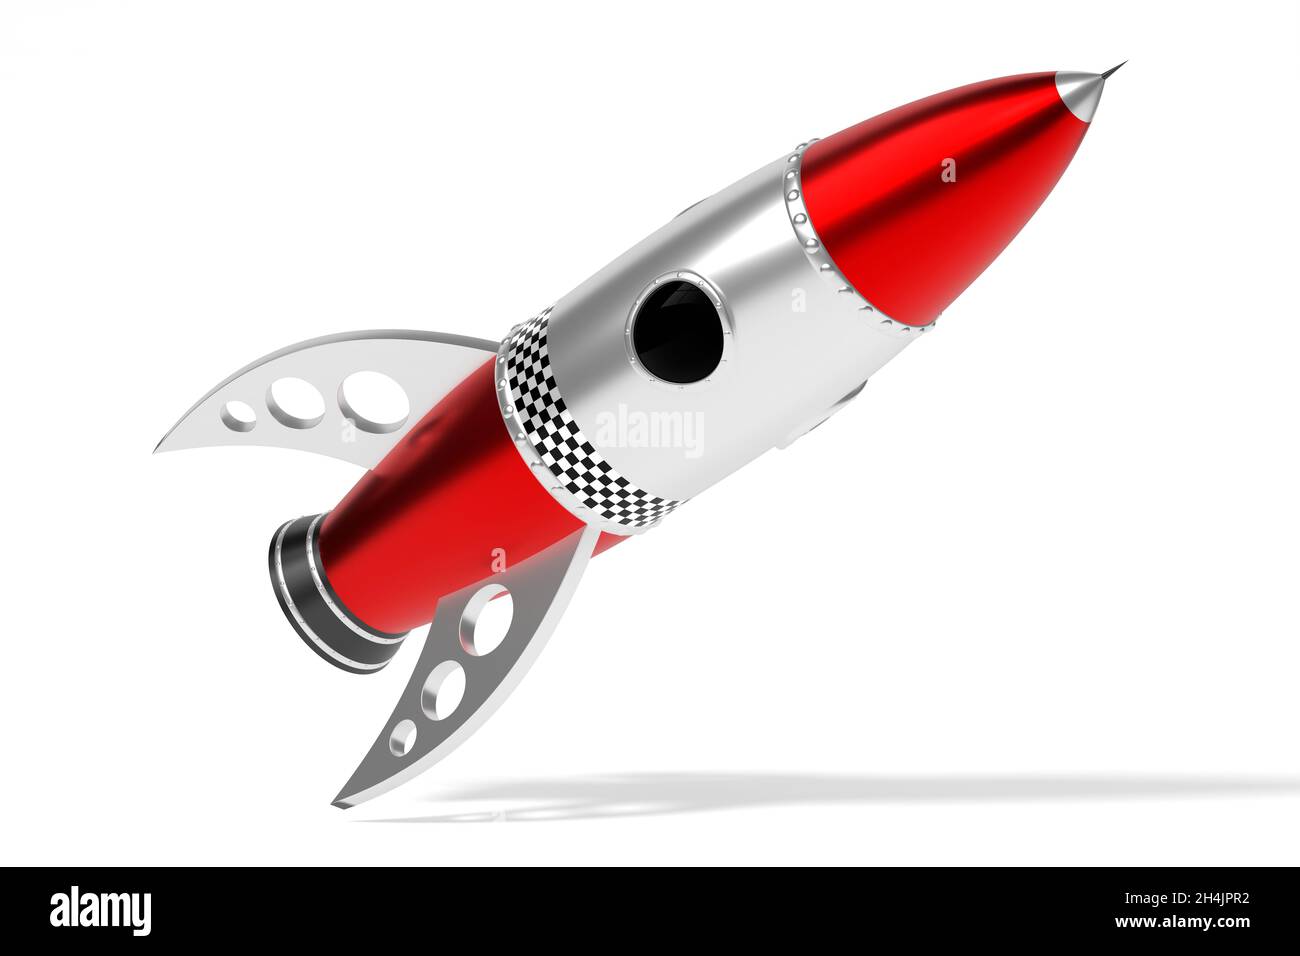 Fusée jouet rouge et argent - illustration 3D Photo Stock - Alamy